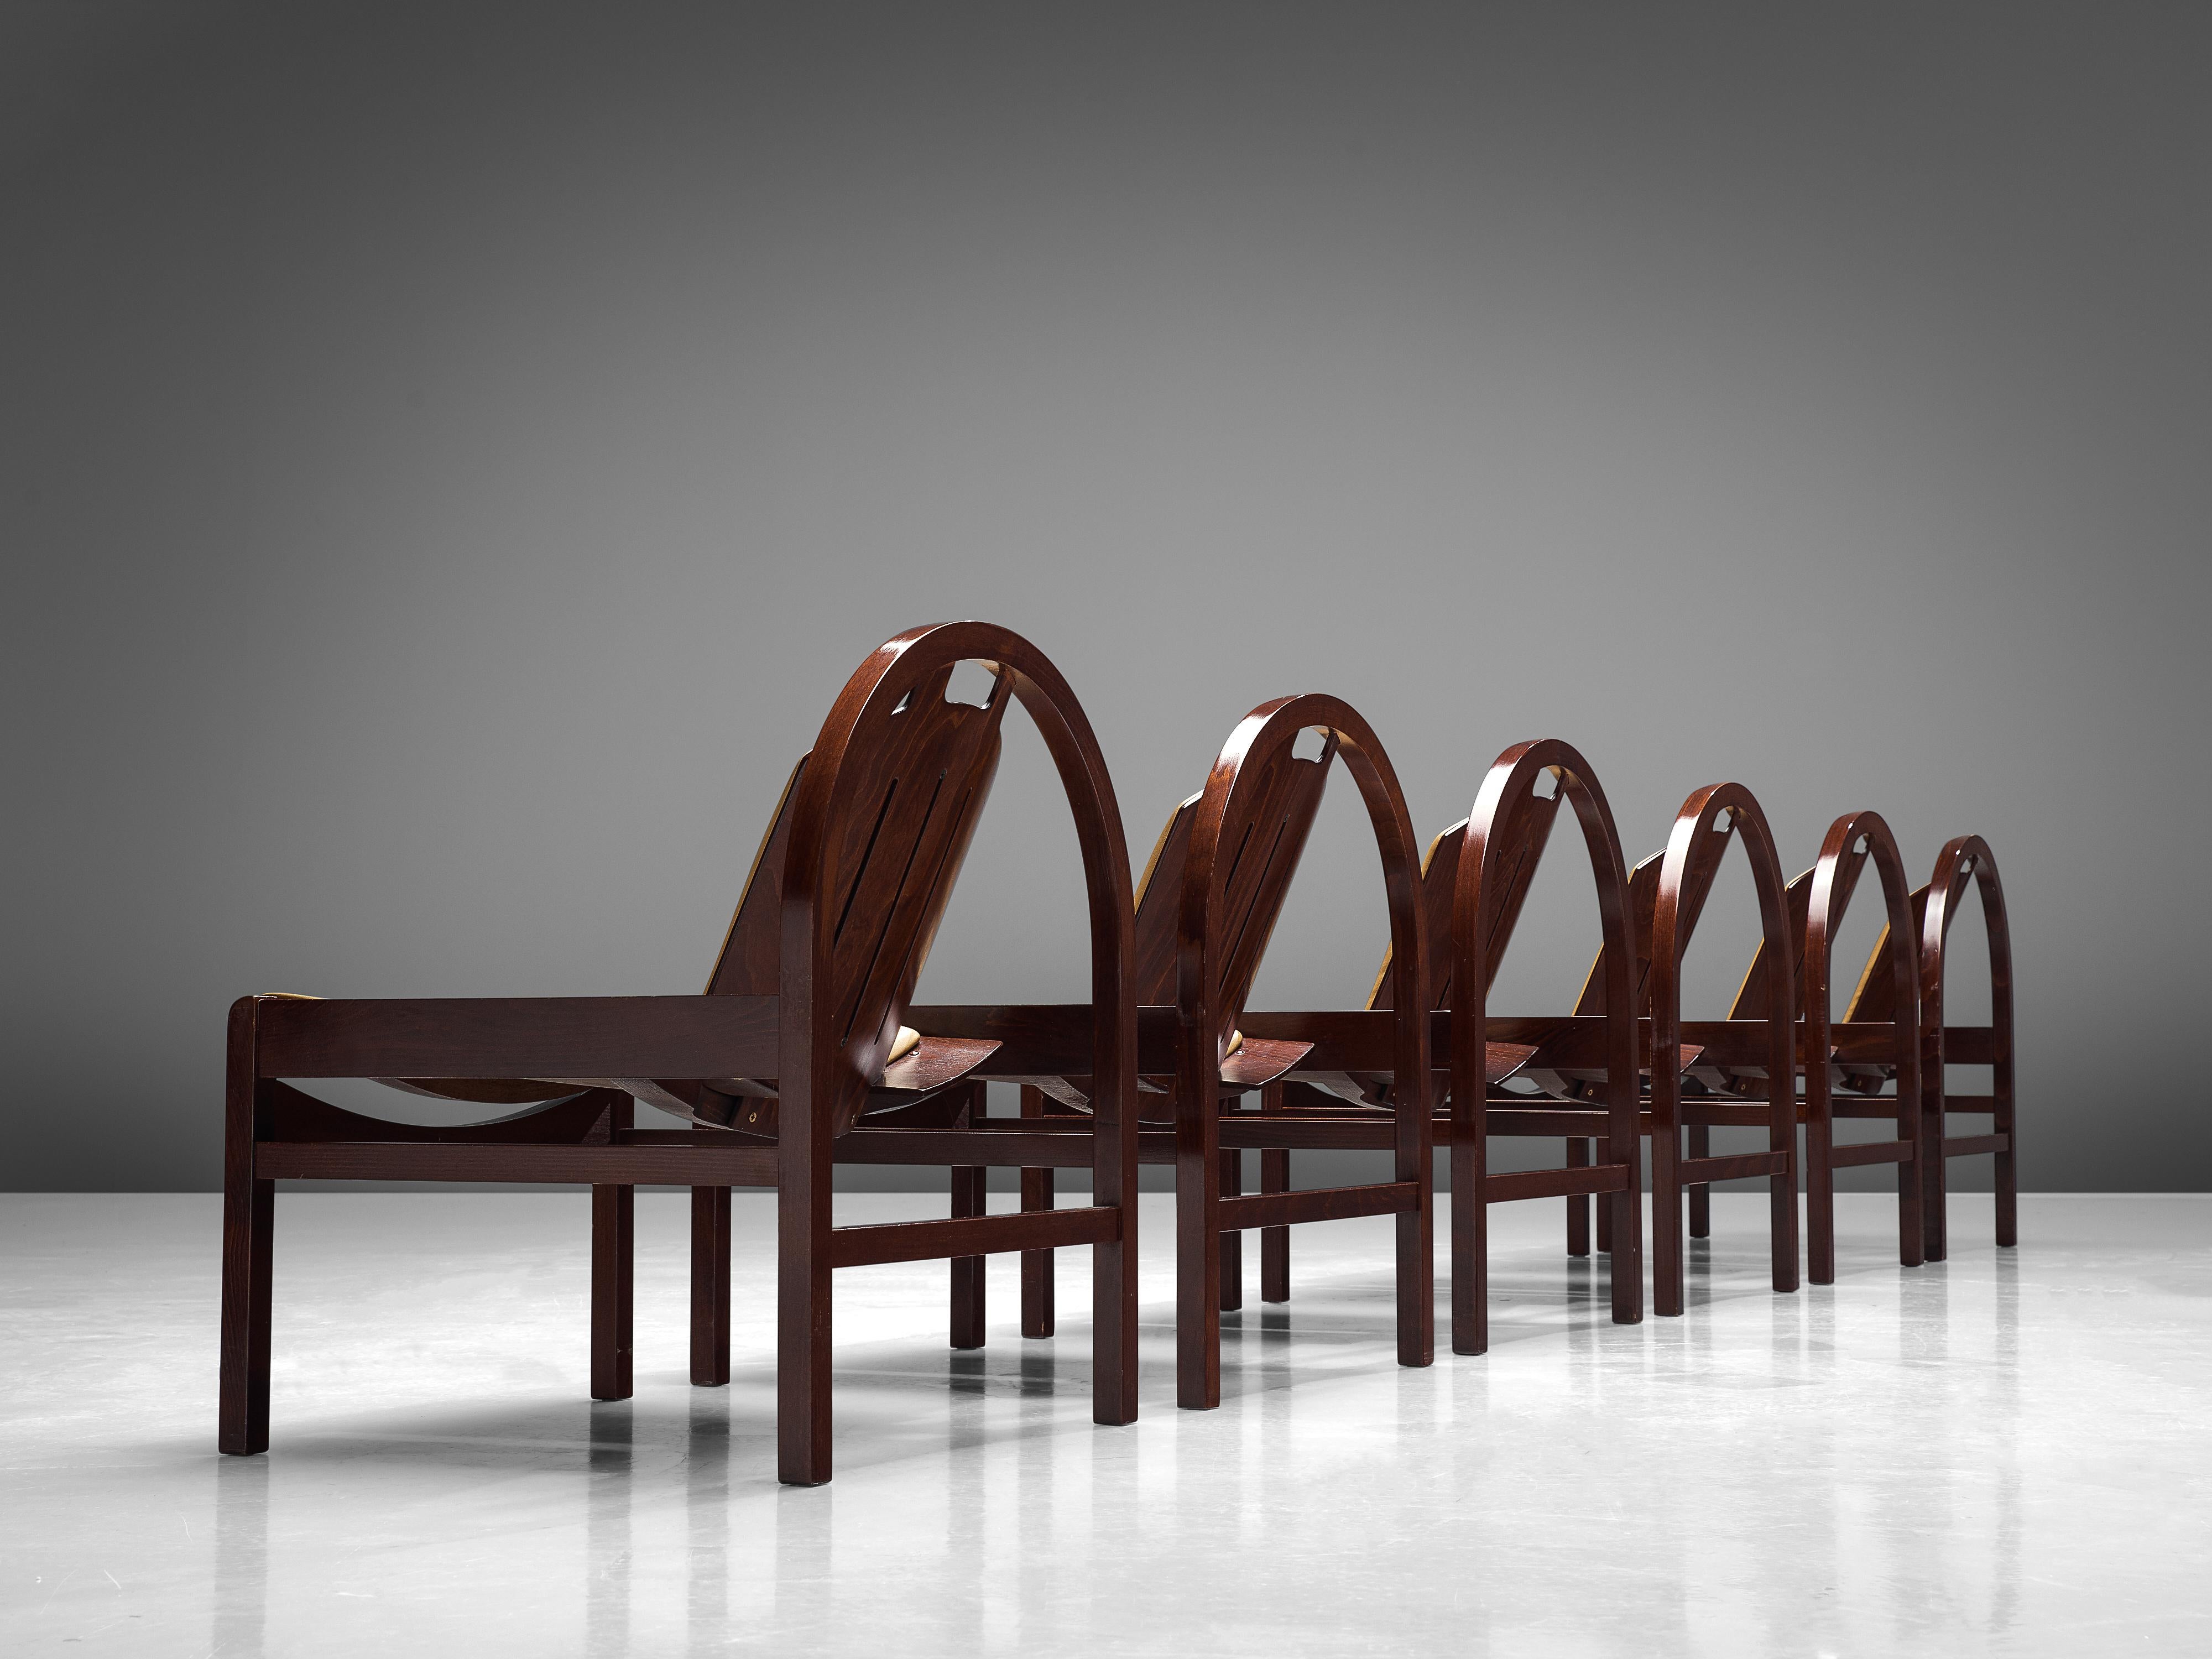 Baumann:: chaises longues 'Argos':: hêtre teinté:: cuir:: France:: années 1970

Ces chaises longues 'Argos' sont fabriquées par Baumann en France dans les années 1970. Les chaises sont dotées d'un cadre rond qui soutient le dossier incliné. L'assise